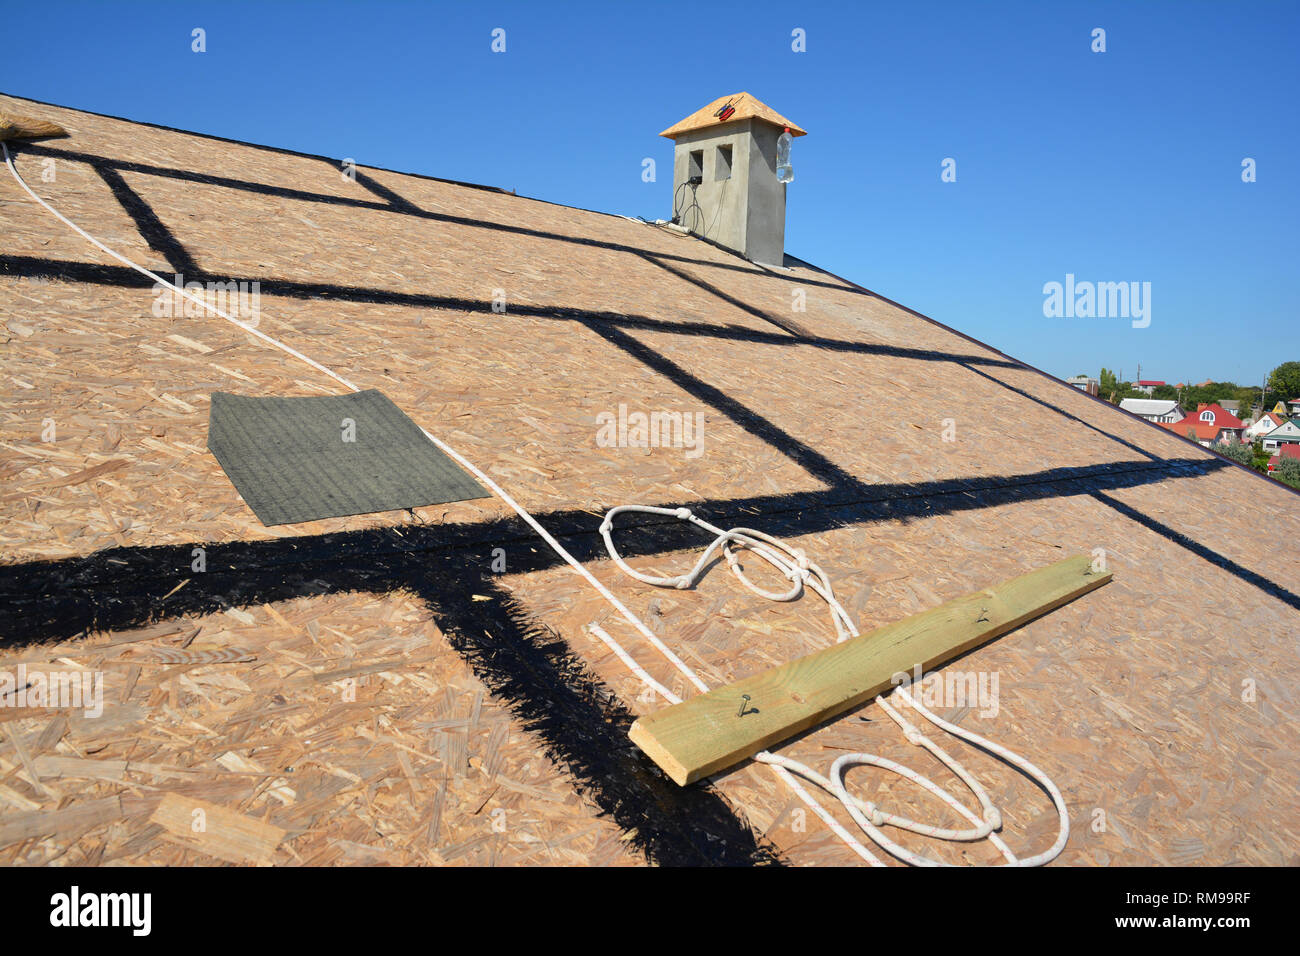 https://c8.alamy.com/compde/rm99rf/roofing-vorbereitung-asphaltschindeln-installation-auf-haus-bau-holzdach-mit-bitumen-spray-und-schutz-seil-sicherheit-kit-roofing-constru-rm99rf.jpg